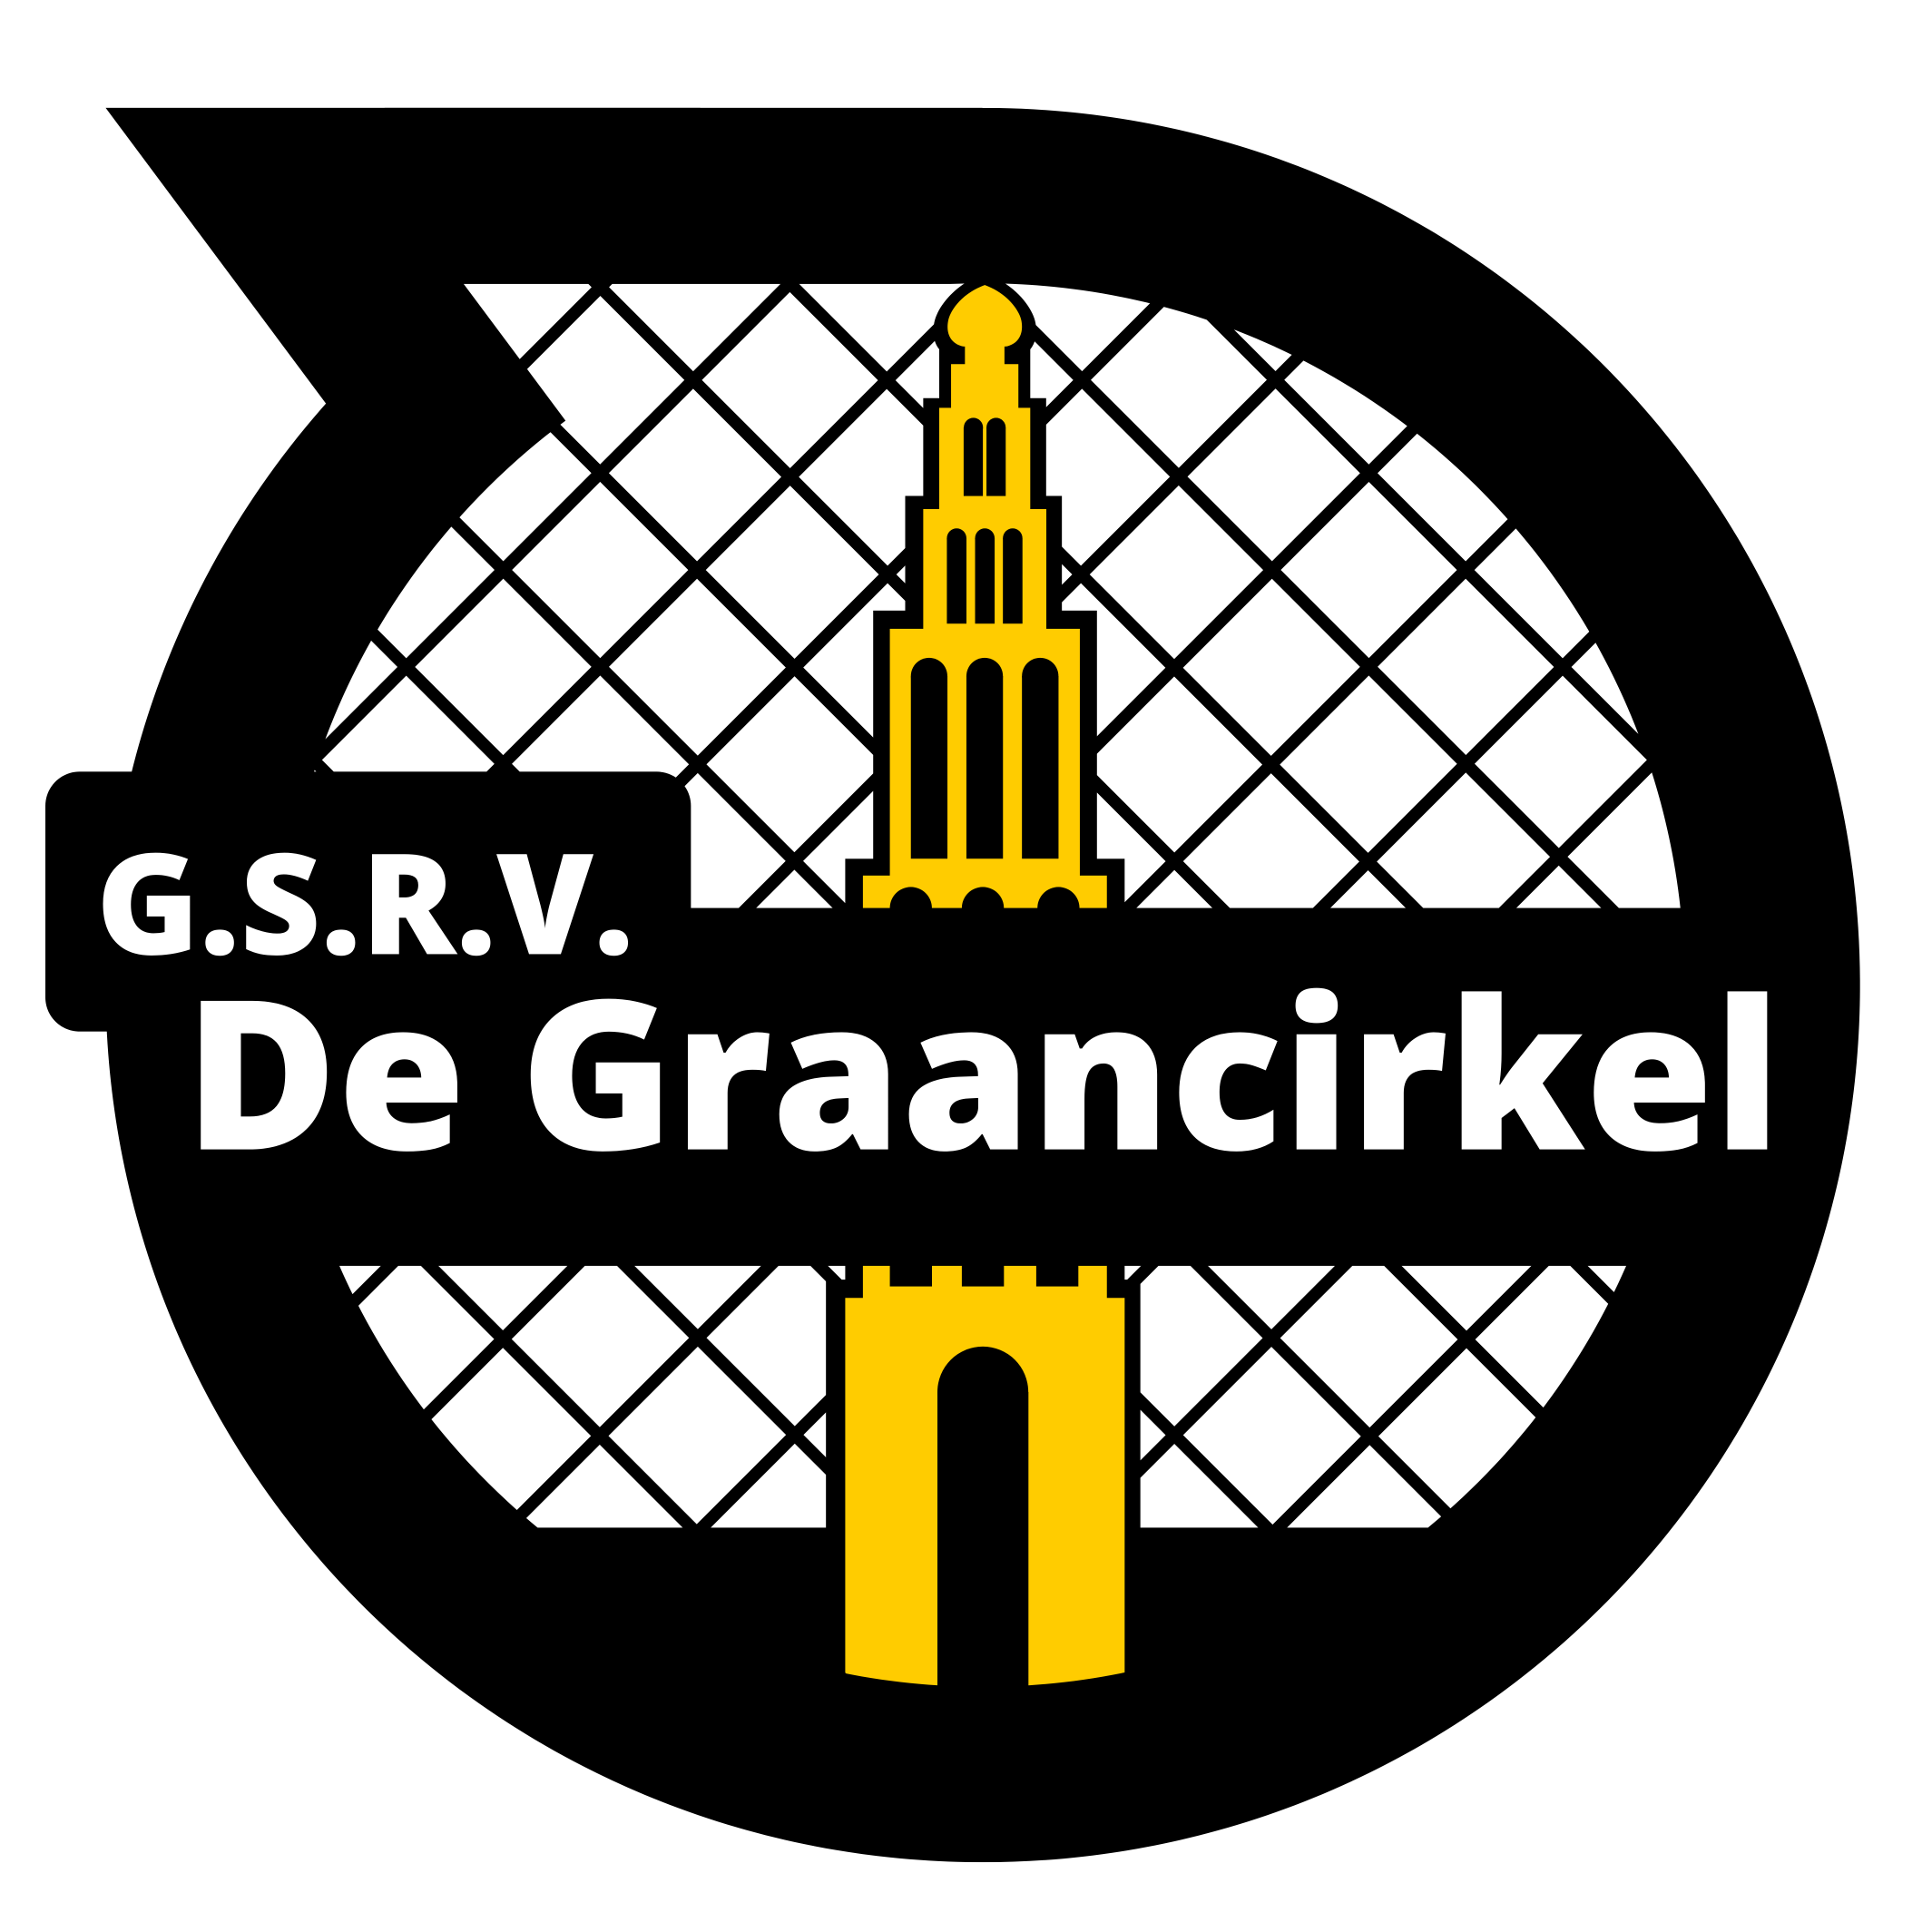 G.S.R.V. De Graancirkel